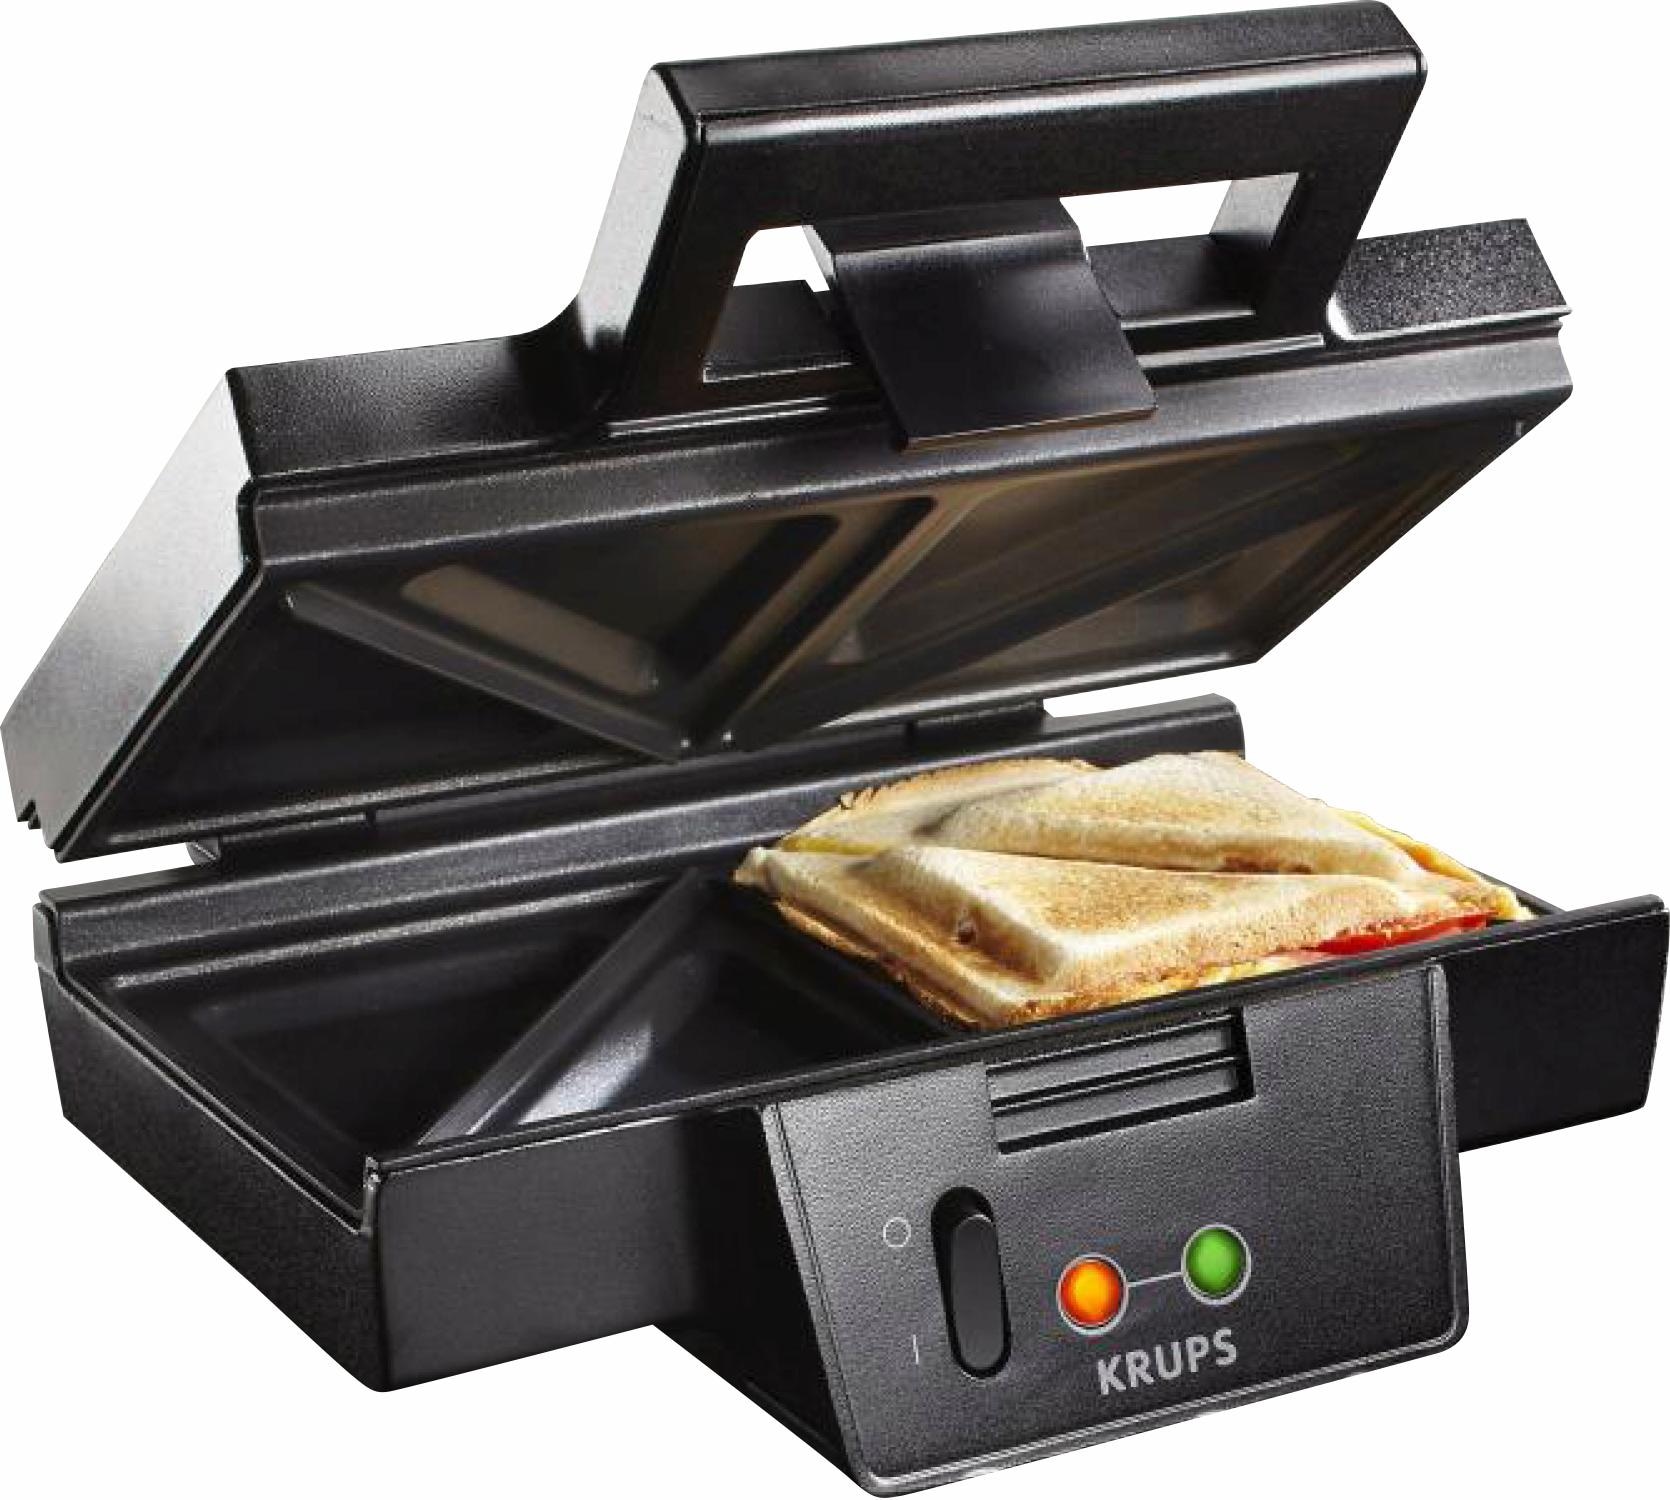 Krups Sandwichmaker "FDK451", 850 W, antihaftbeschichtete Platten, Aufheiz- und Temperaturkontrollleuchte